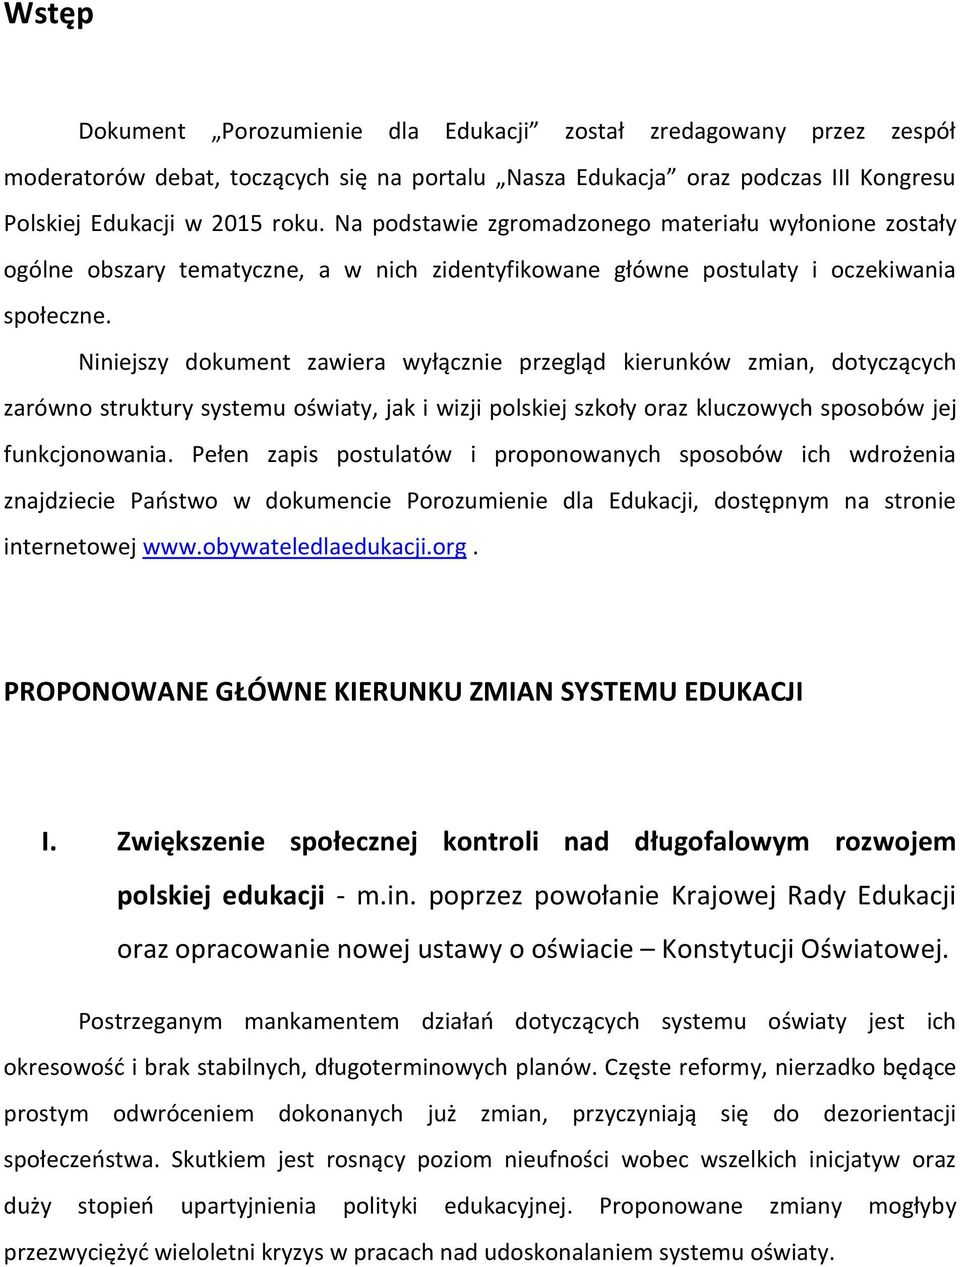 Niniejszy dokument zawiera wyłącznie przegląd kierunków zmian, dotyczących zarówno struktury systemu oświaty, jak i wizji polskiej szkoły oraz kluczowych sposobów jej funkcjonowania.